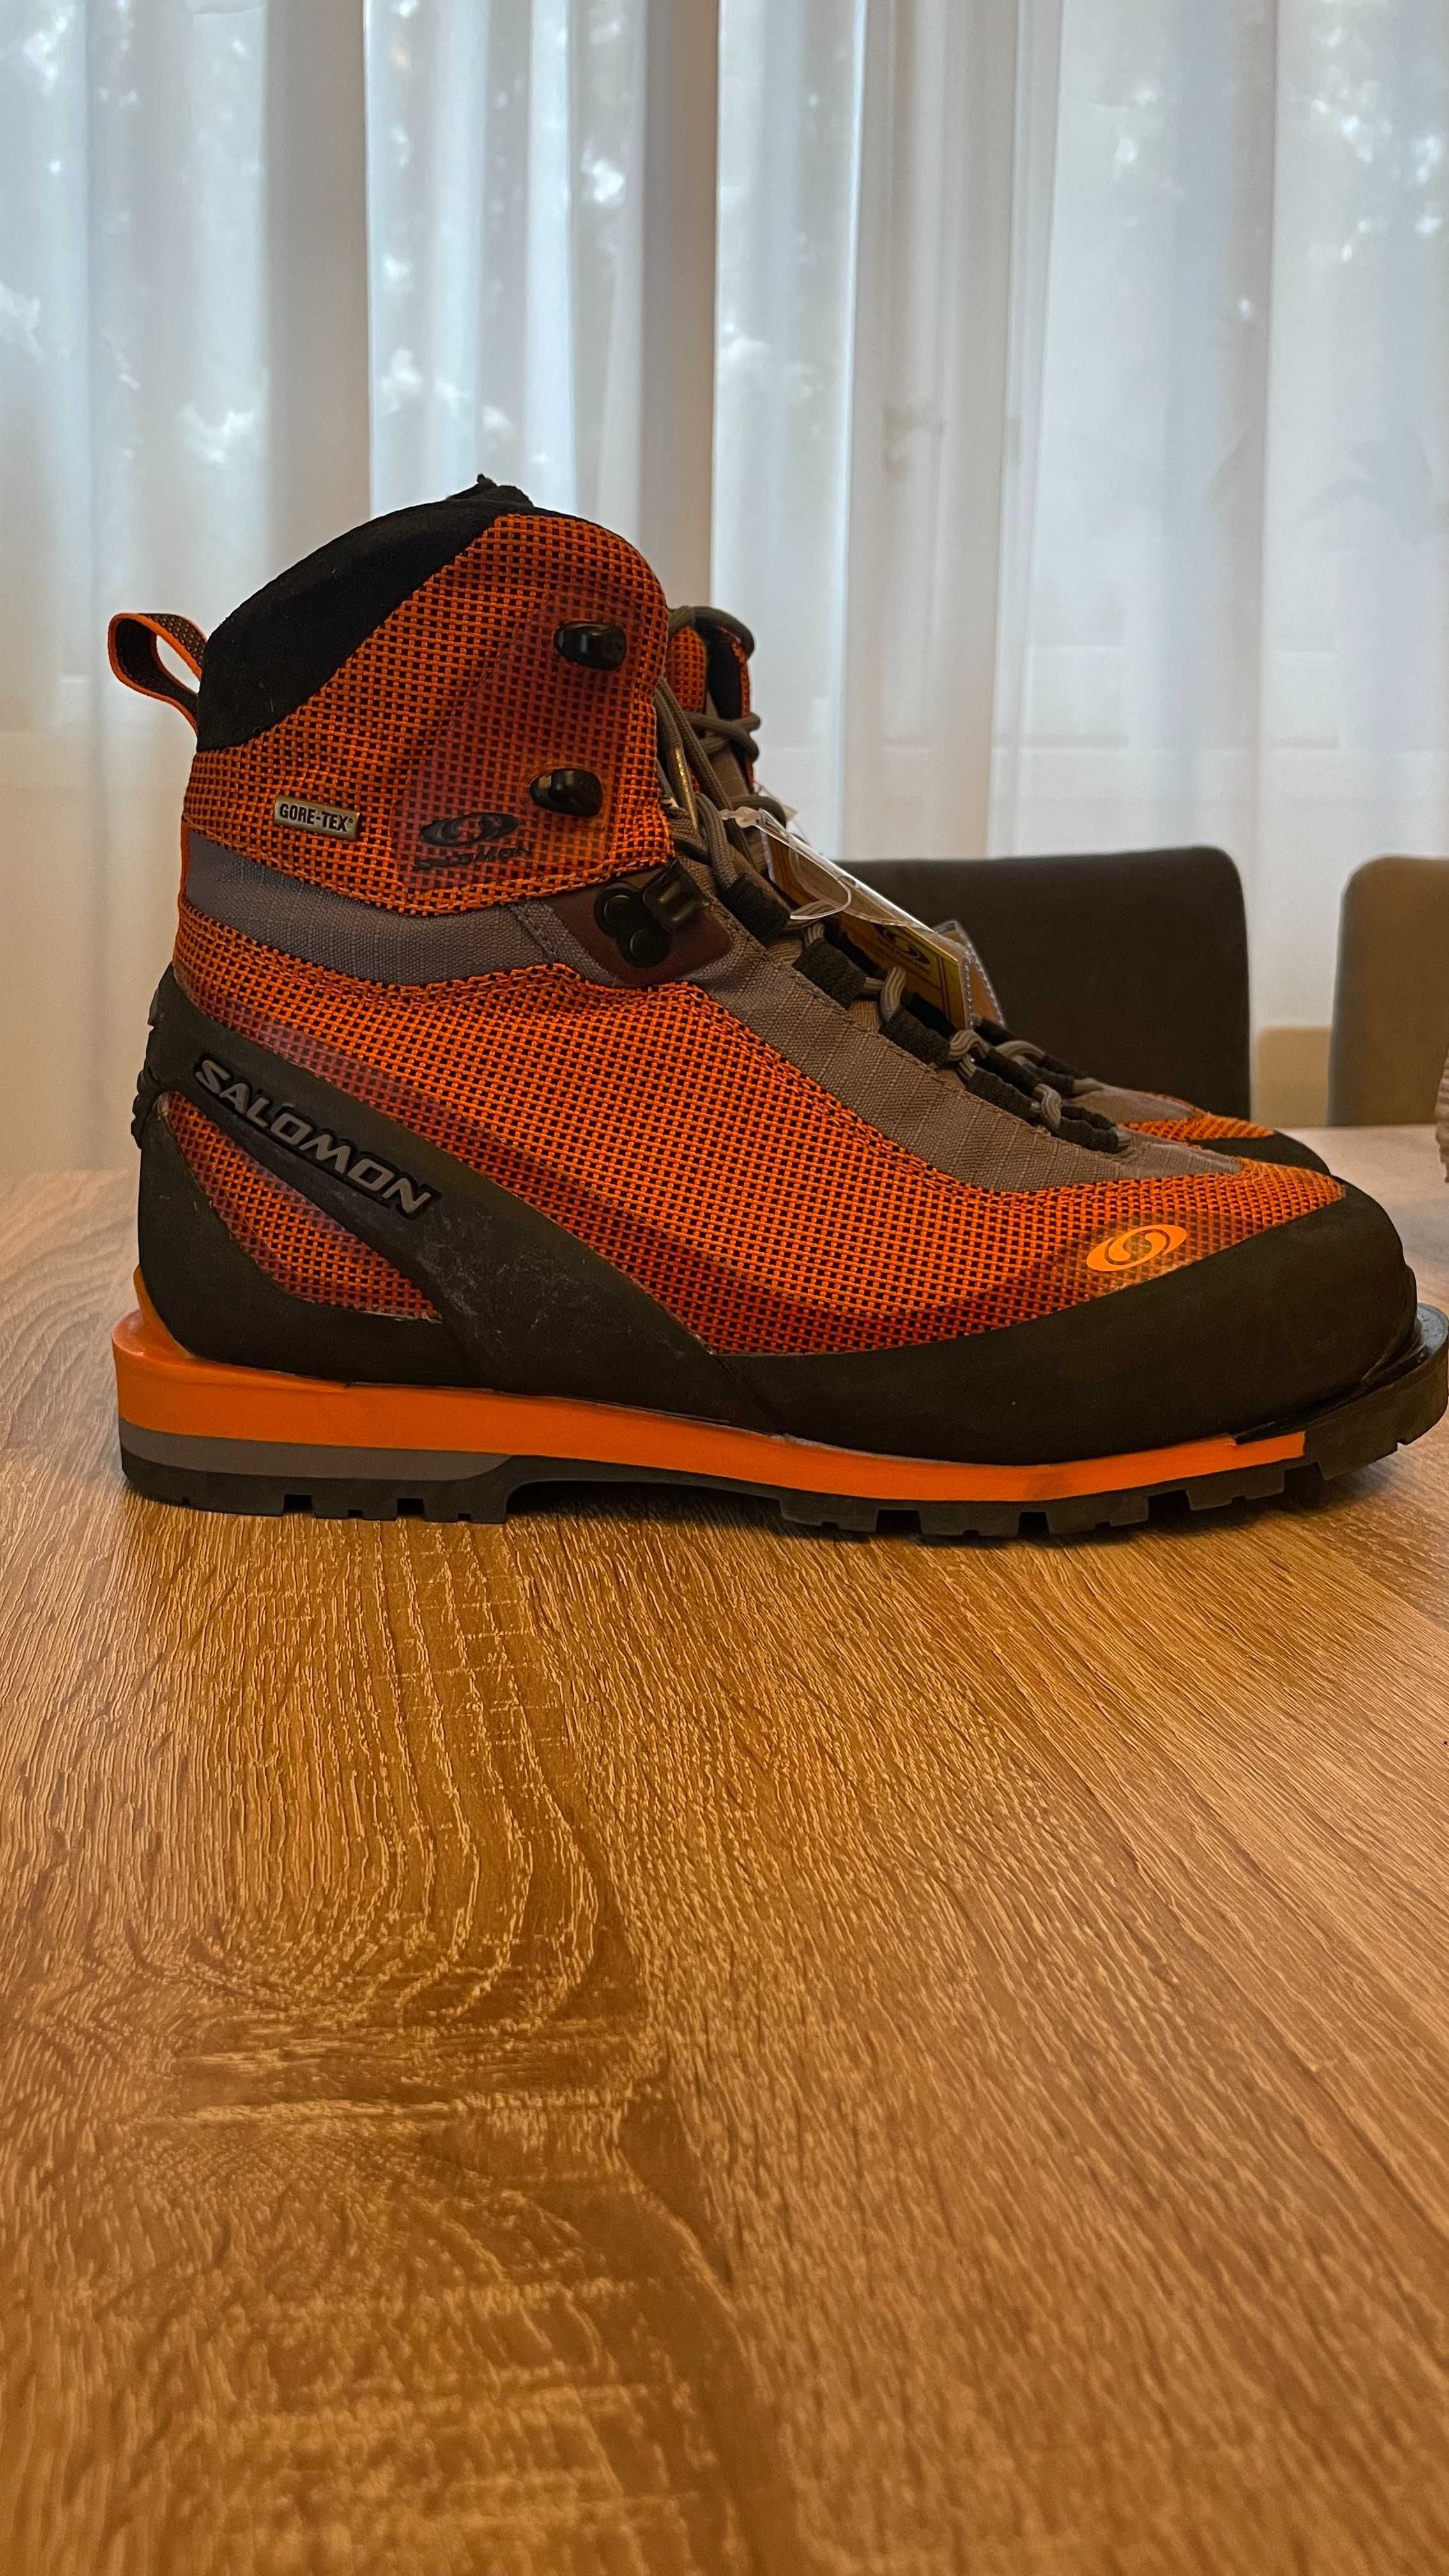 Salomon Ice Light GTX 42 2/3 SAMPLE NOI ghete boots trekking munte